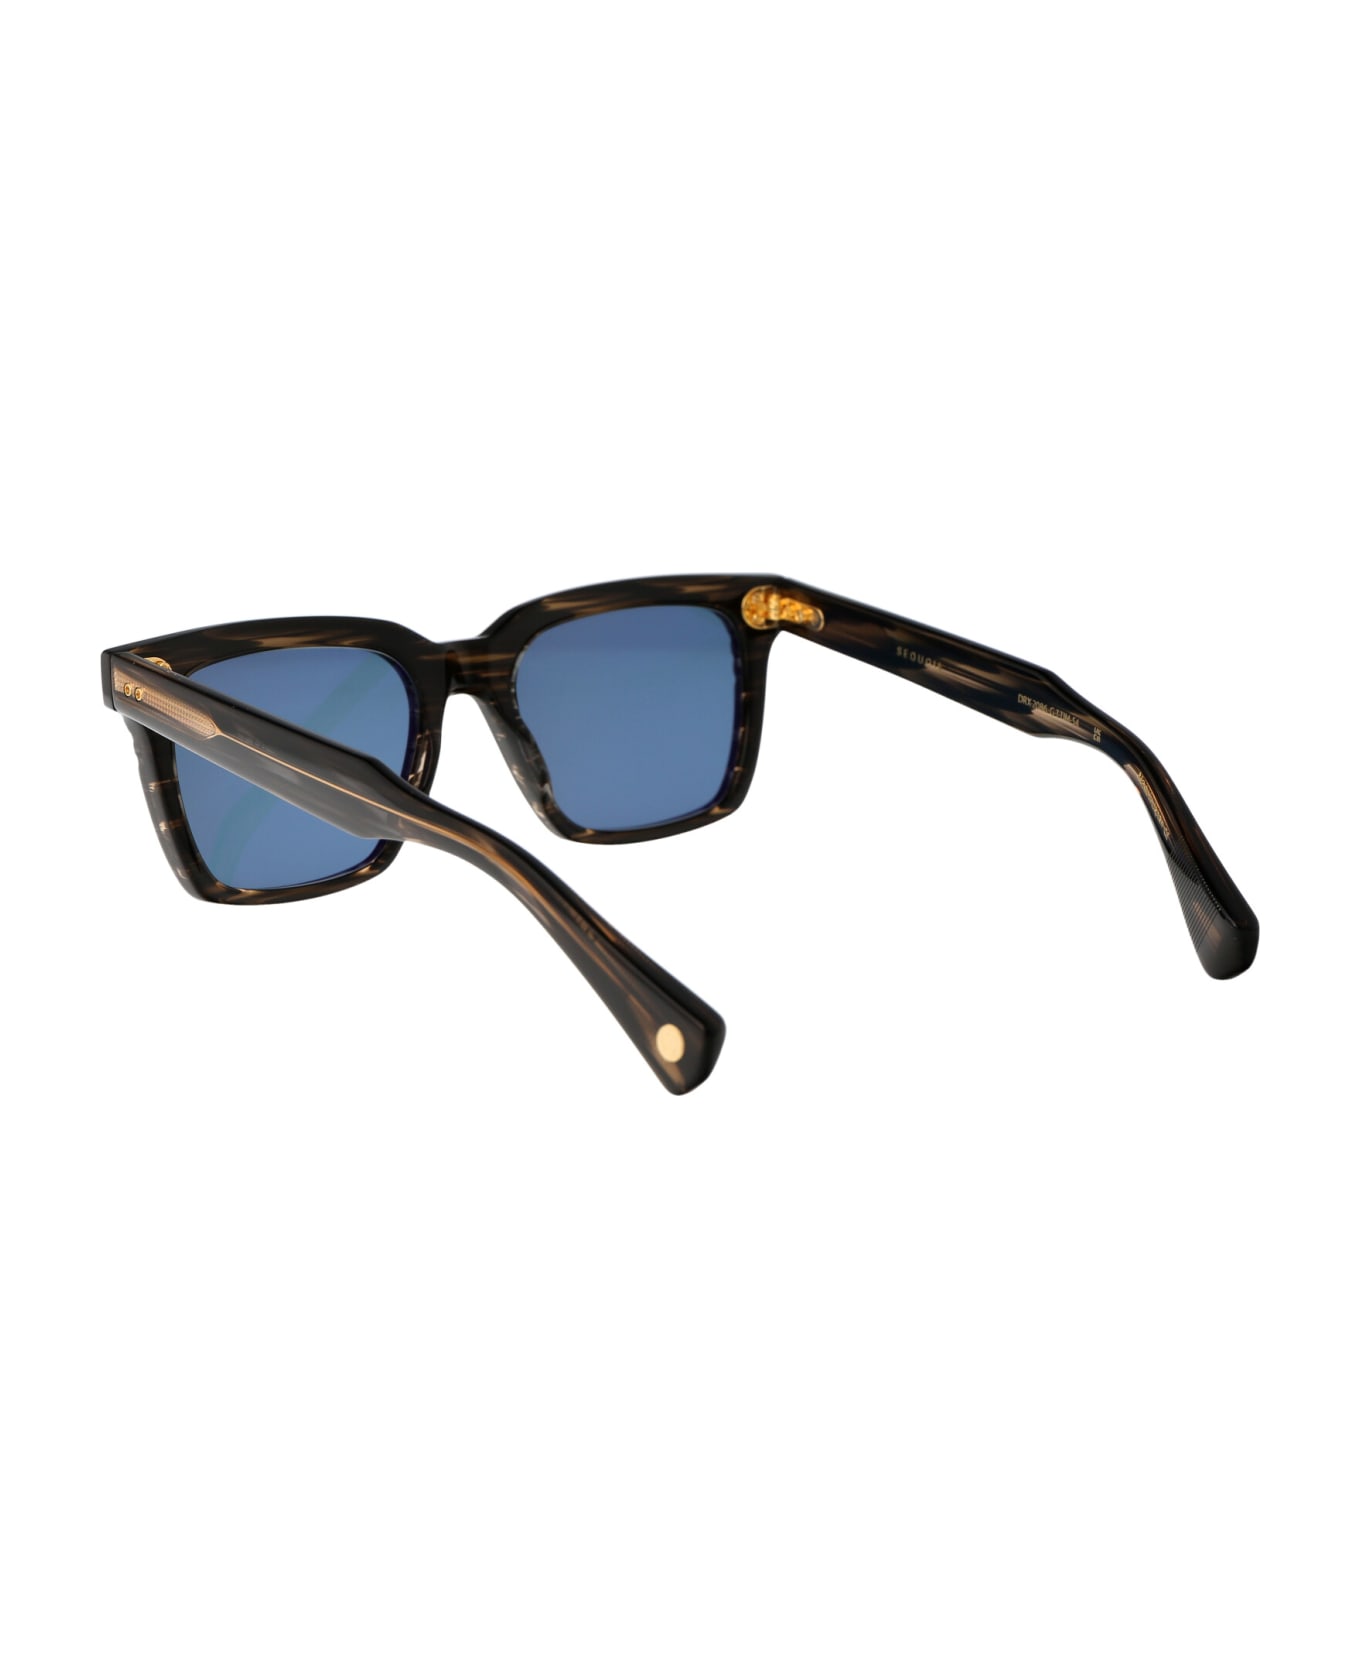 Dita Sequoia Sunglasses - Can anyone identify Chiaras sunglasses in Slide 10